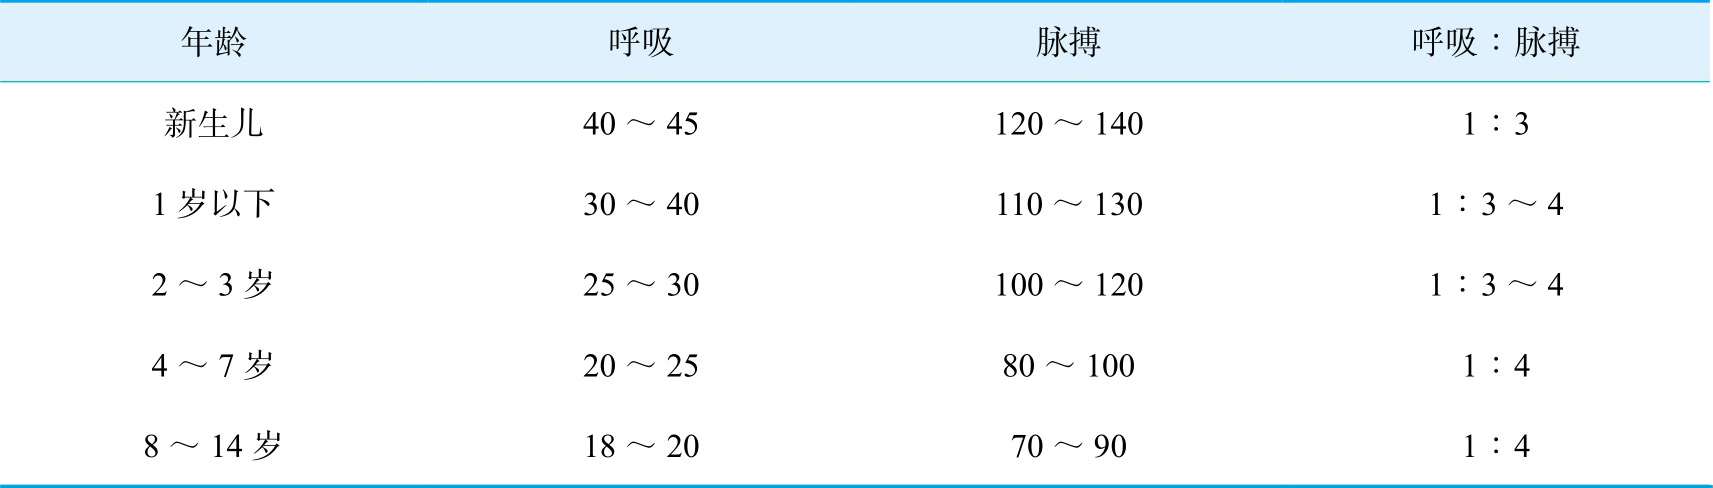 表2-4 各年龄小儿呼吸,脉搏次数(次/分)